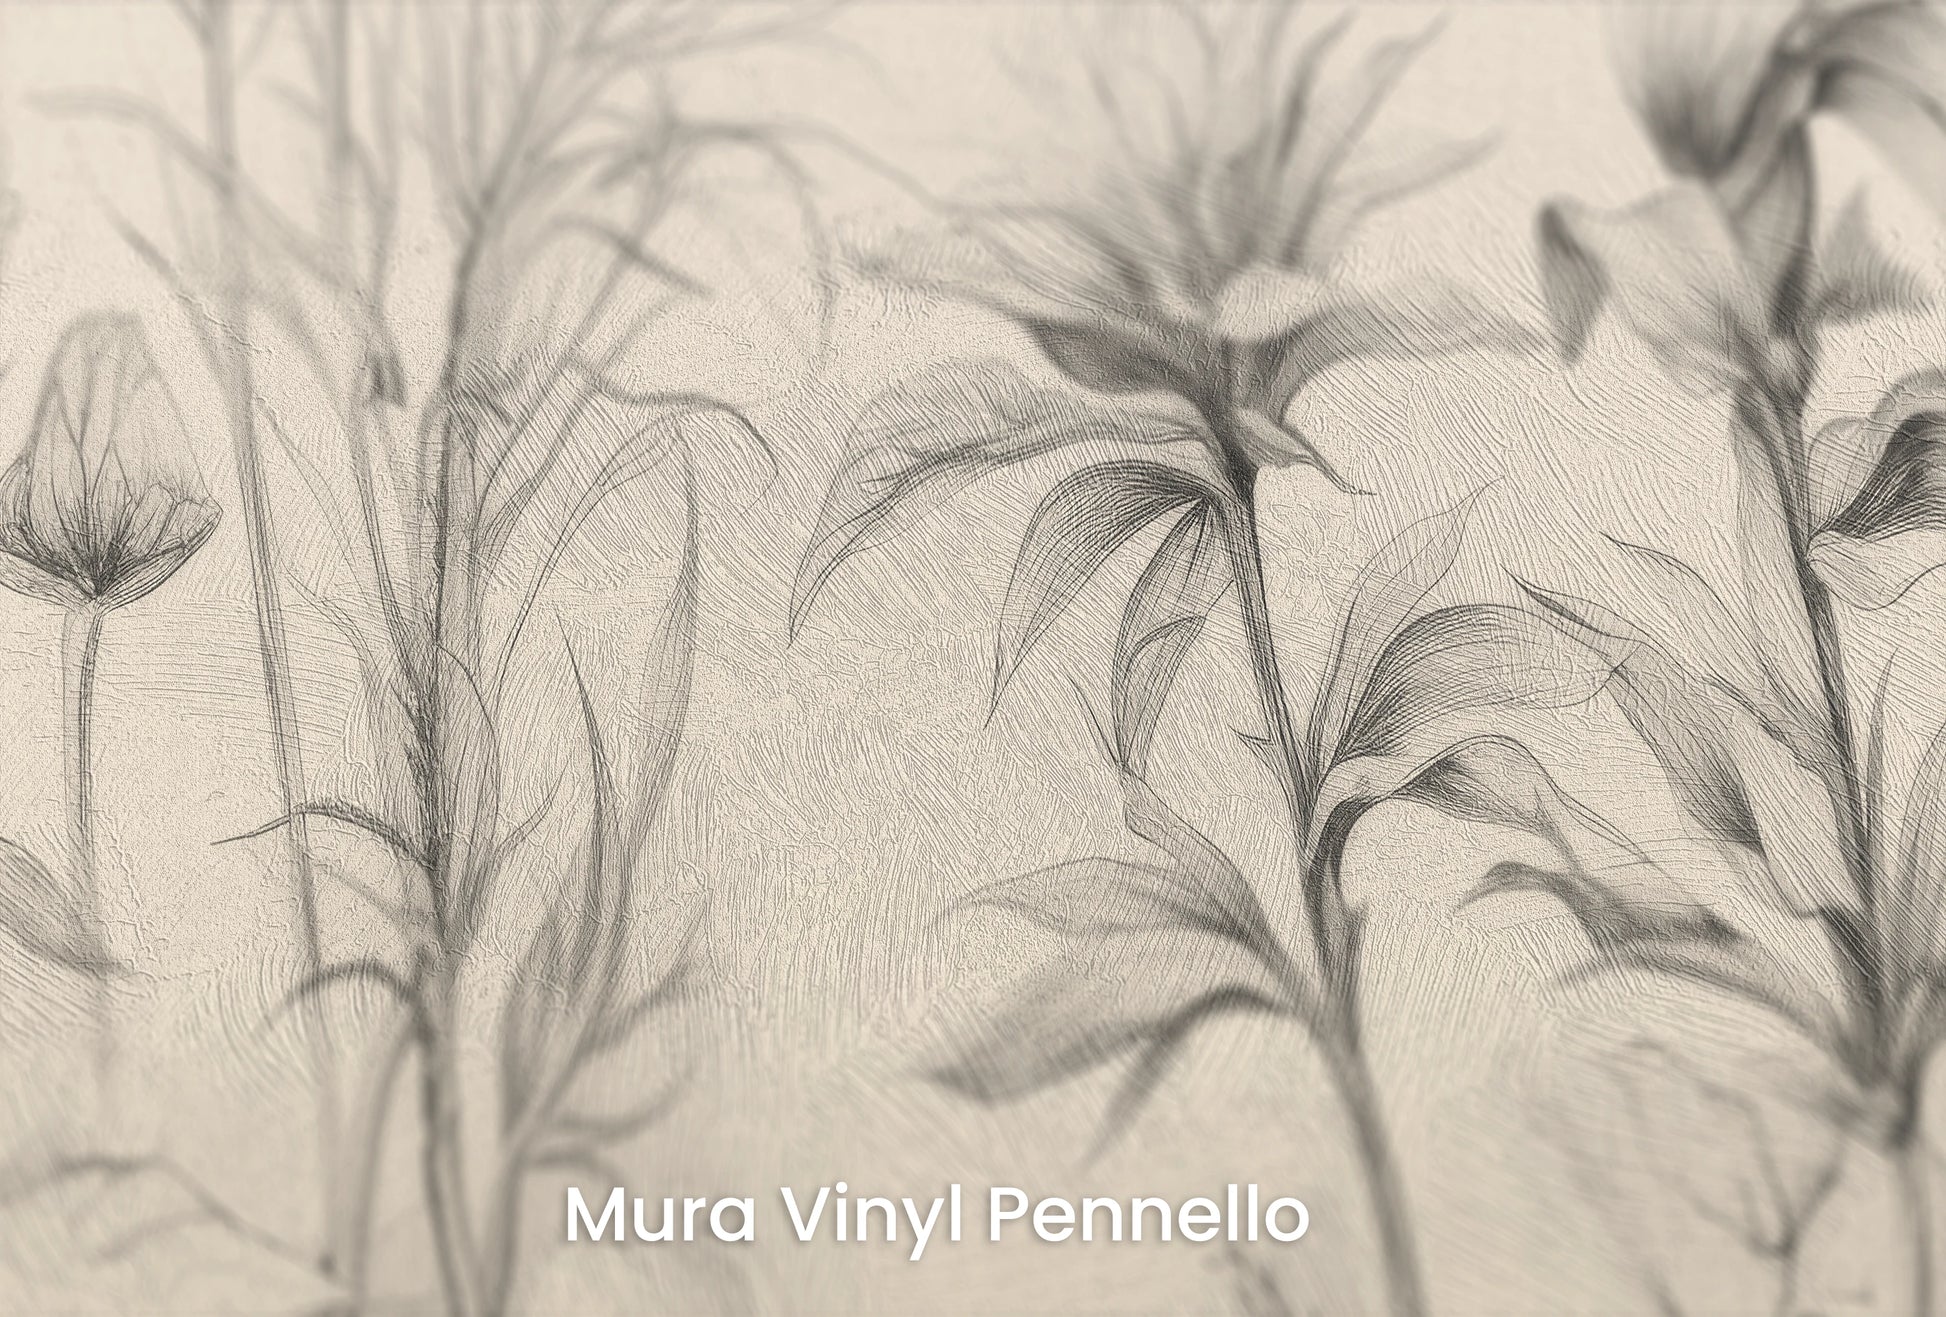 Zbliżenie na artystyczną fototapetę o nazwie Floral Tranquility na podłożu Mura Vinyl Pennello - faktura pociągnięć pędzla malarskiego.